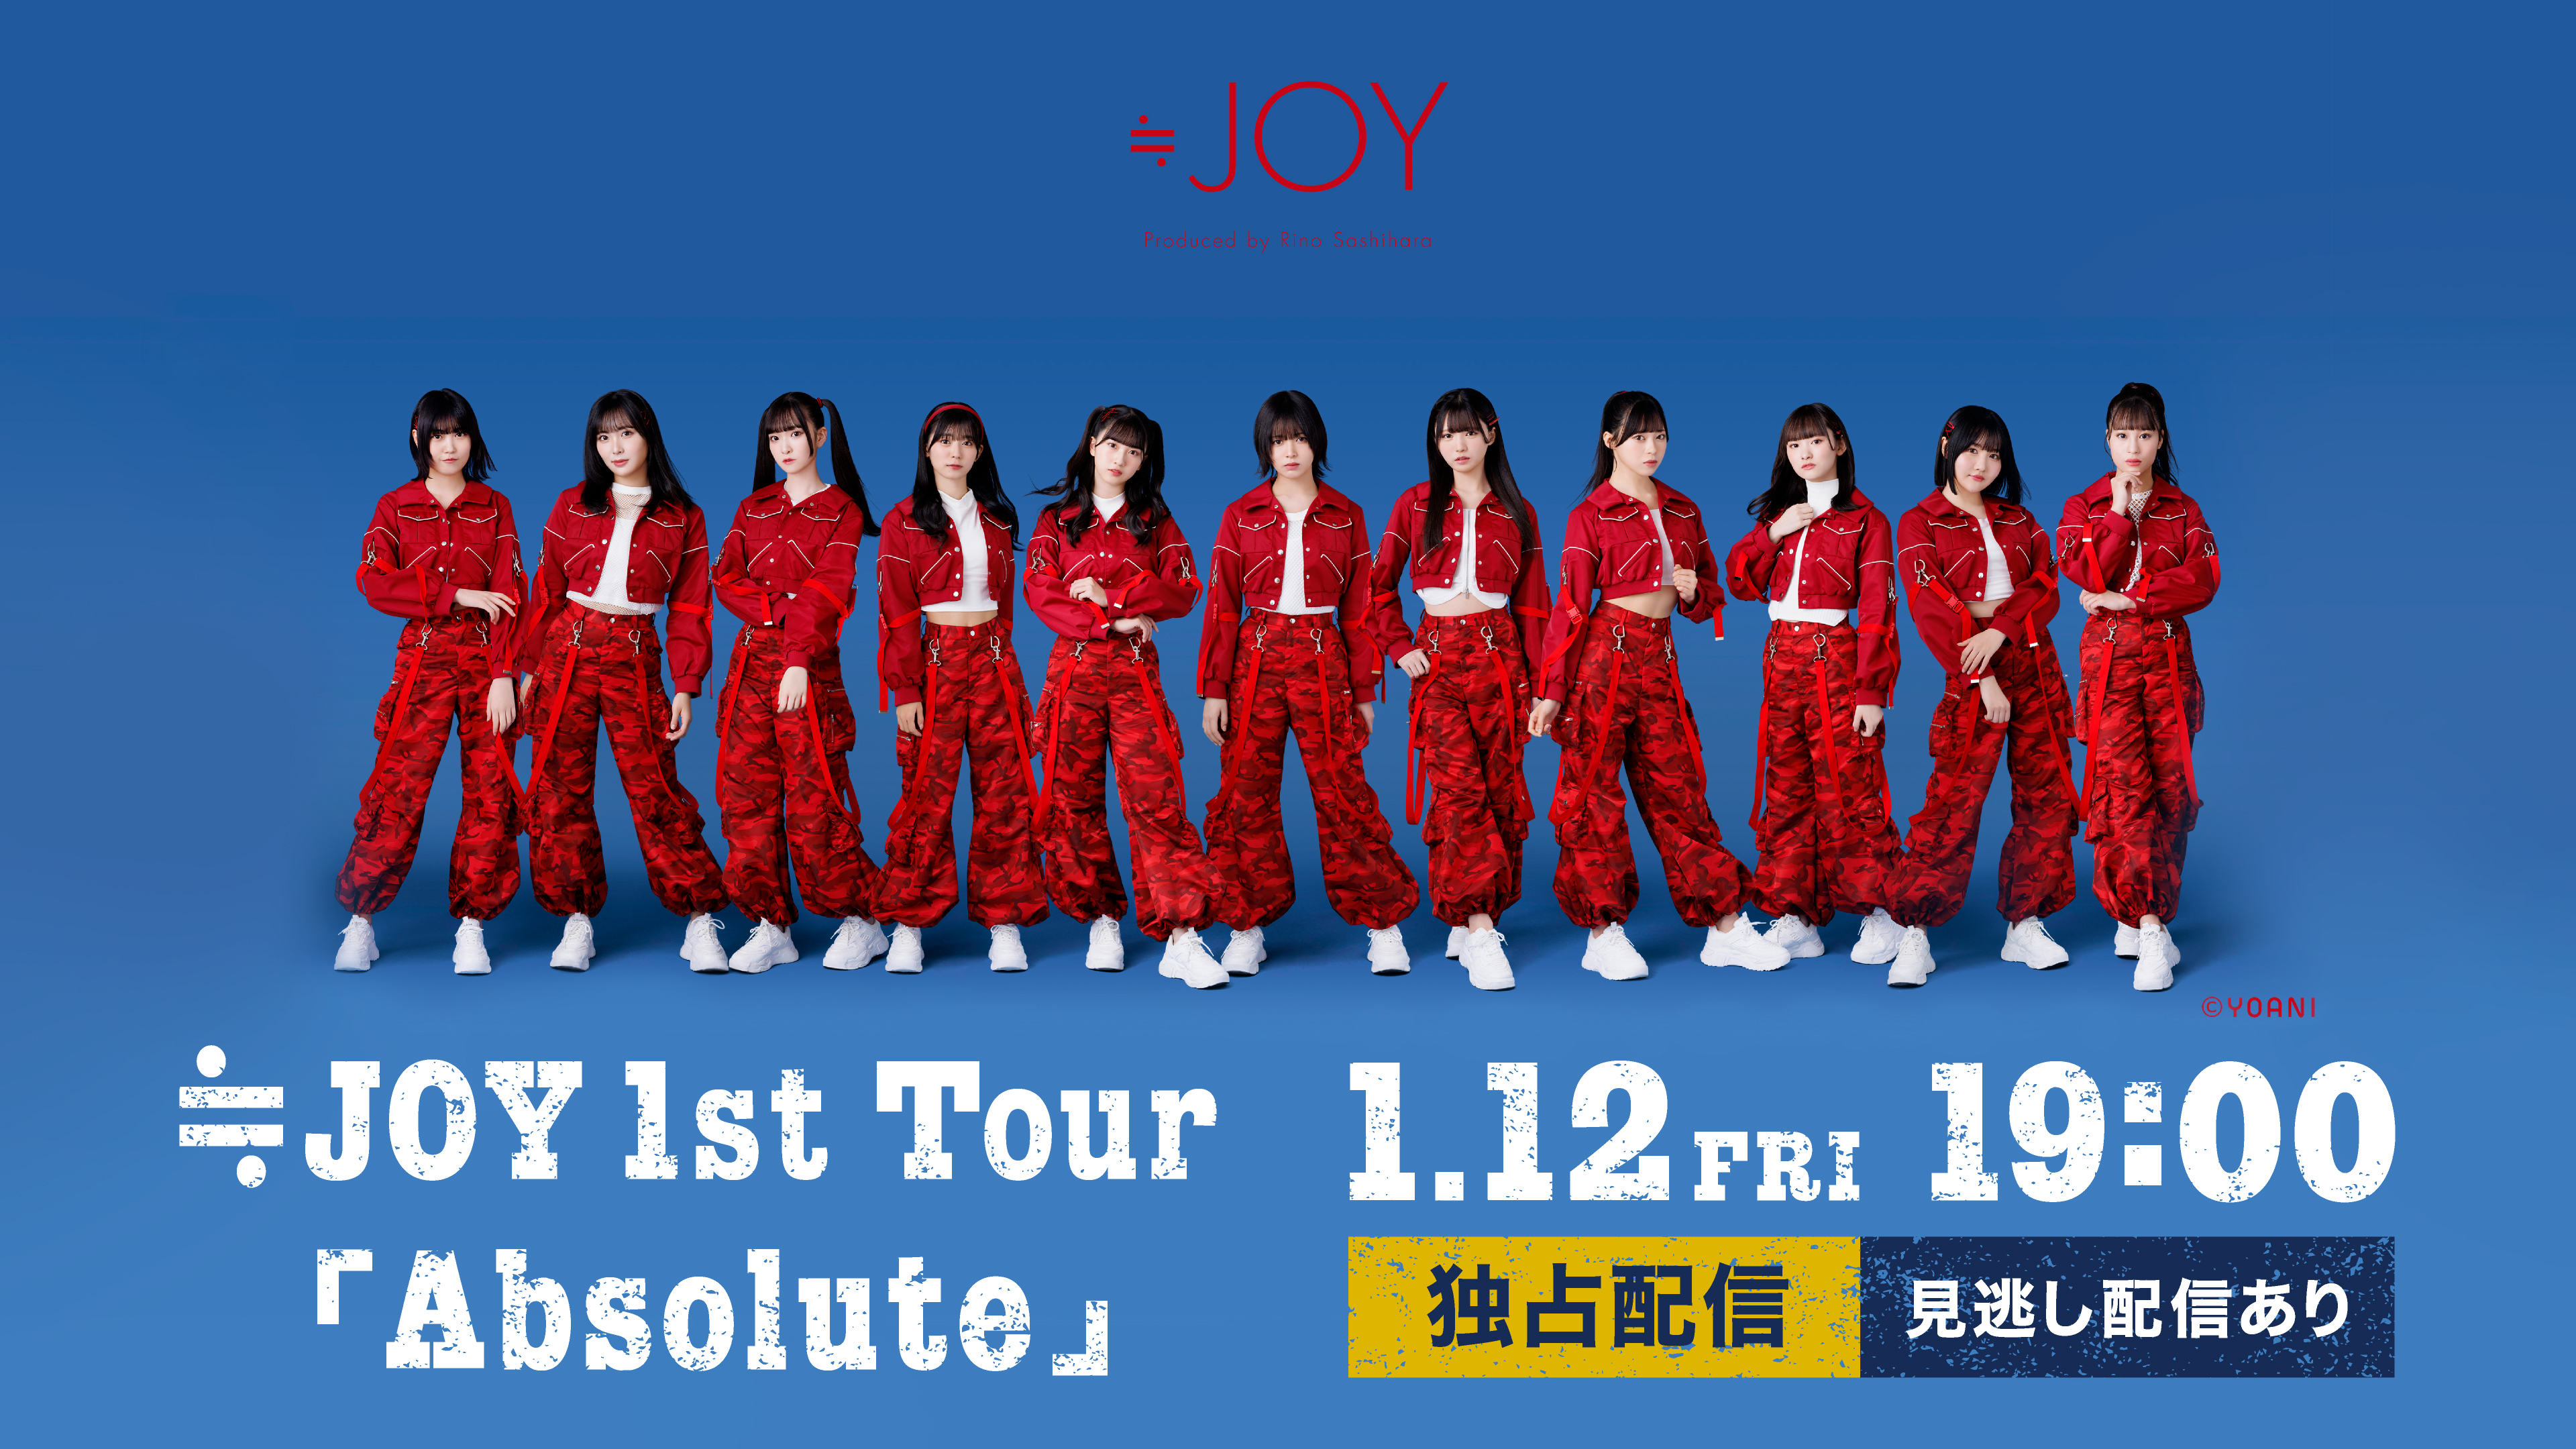 ≒JOY 1st Tour「Absolute」